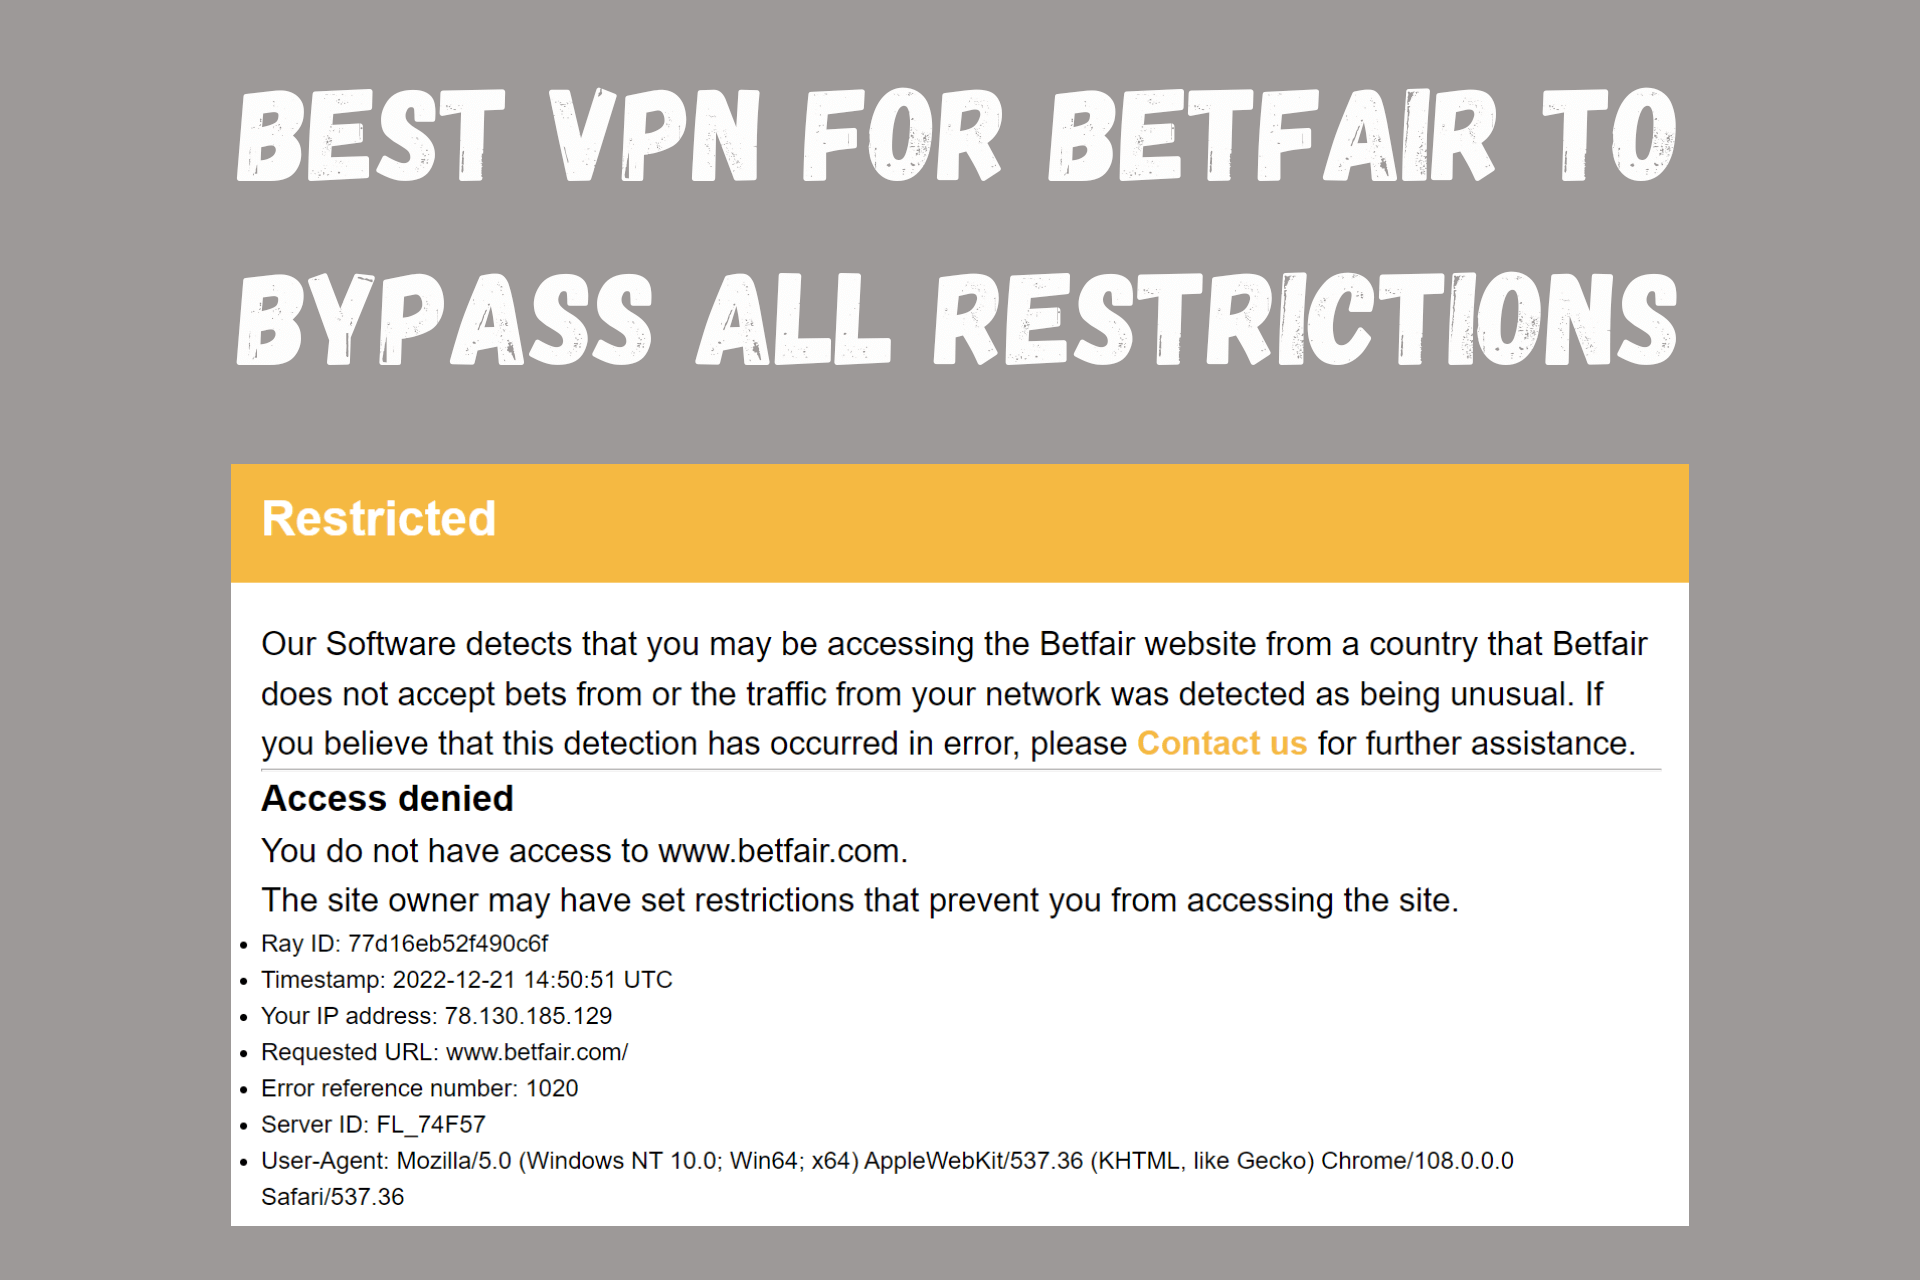 Best VPN for Betfair